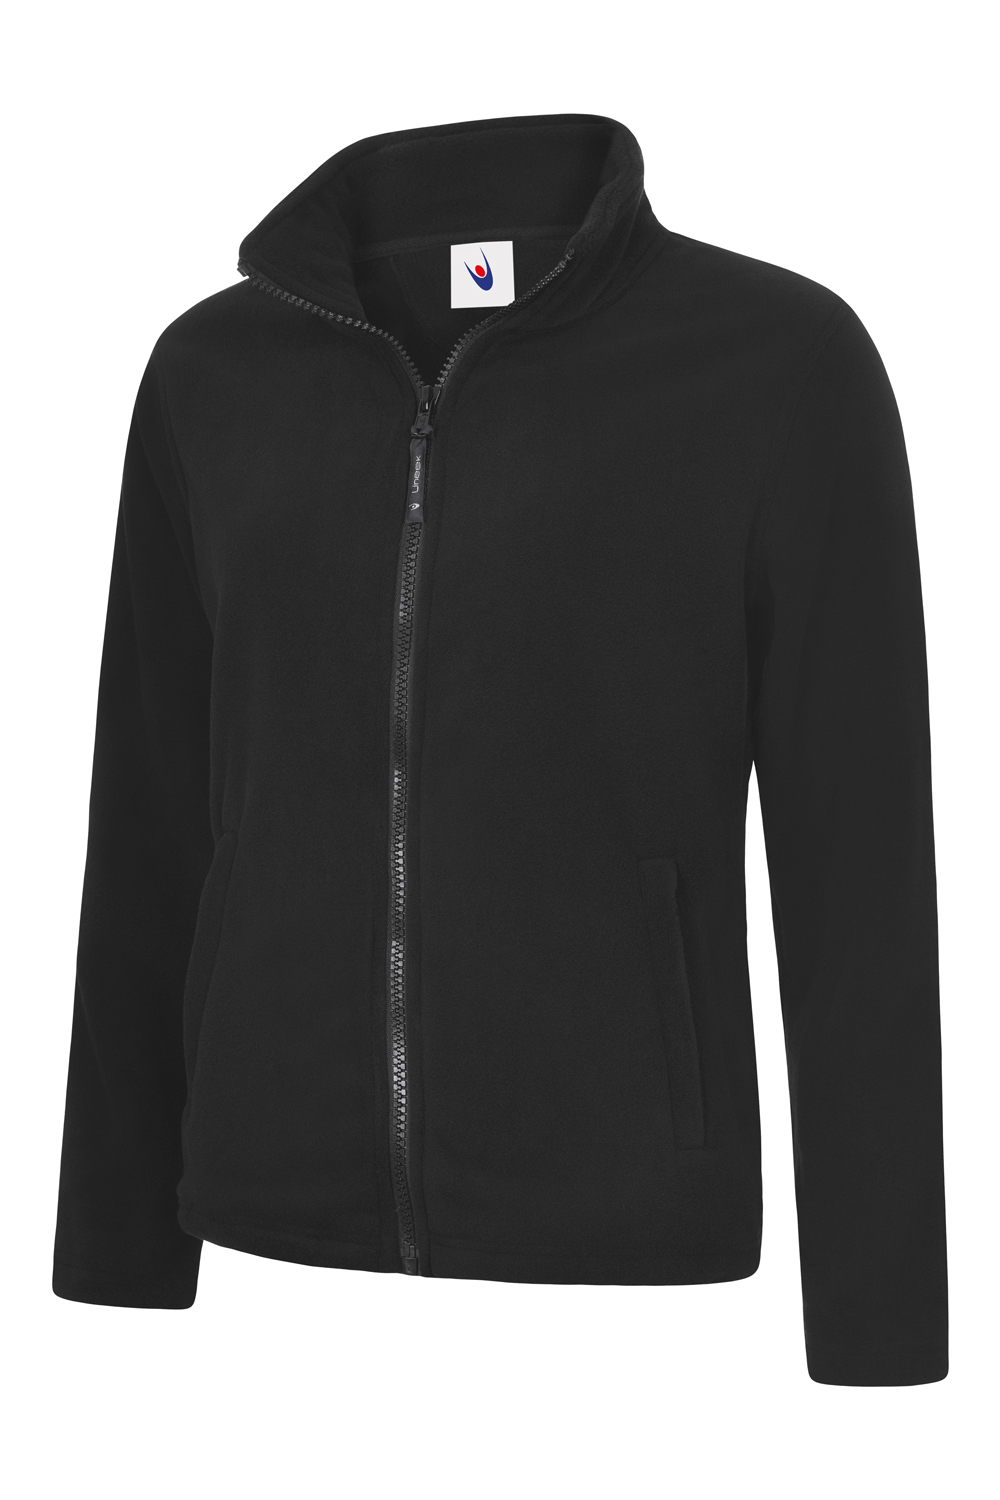 Ladies Classic Full Zip Fleece Jacket-Uneek Clothing